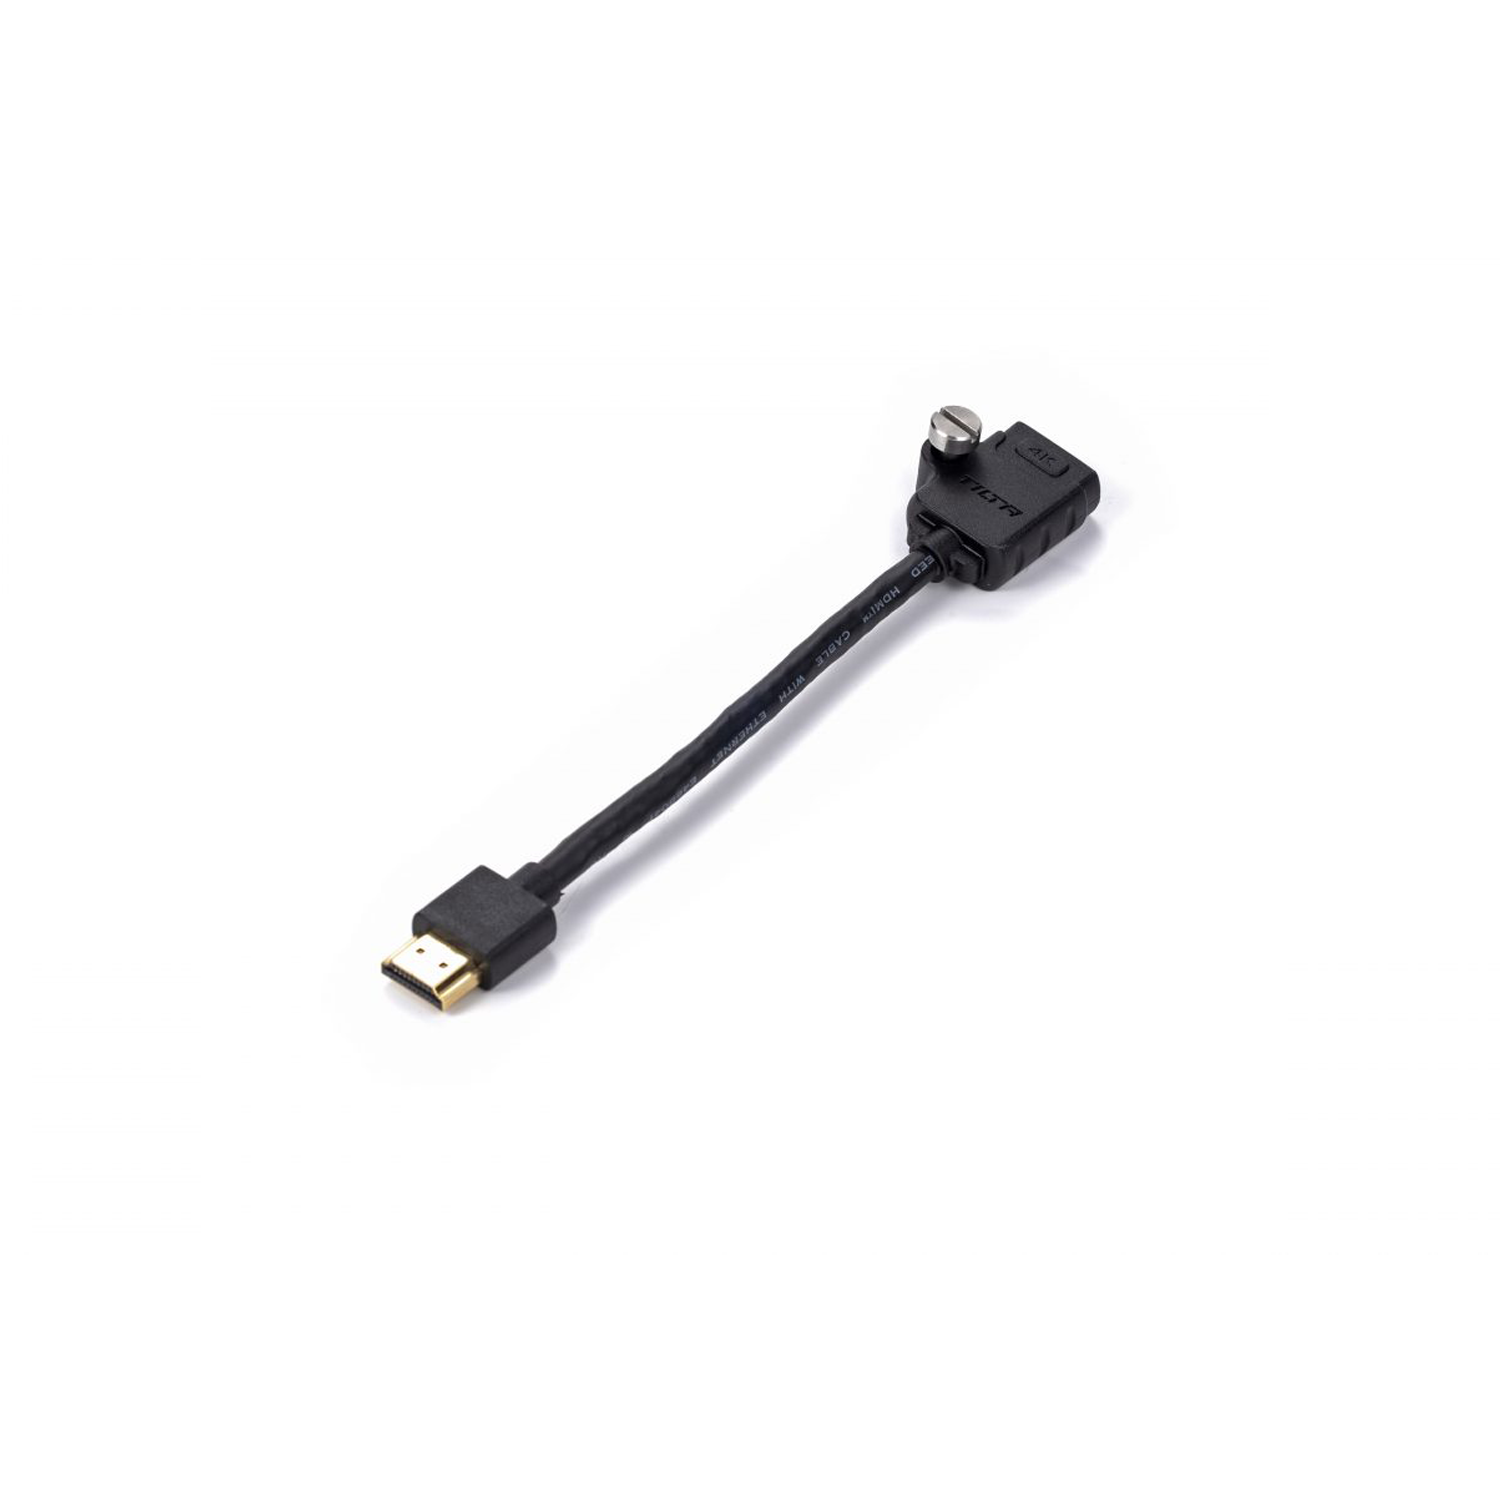 Tilta Hdmi mâle à HDMI Cable femelle (17 cm)